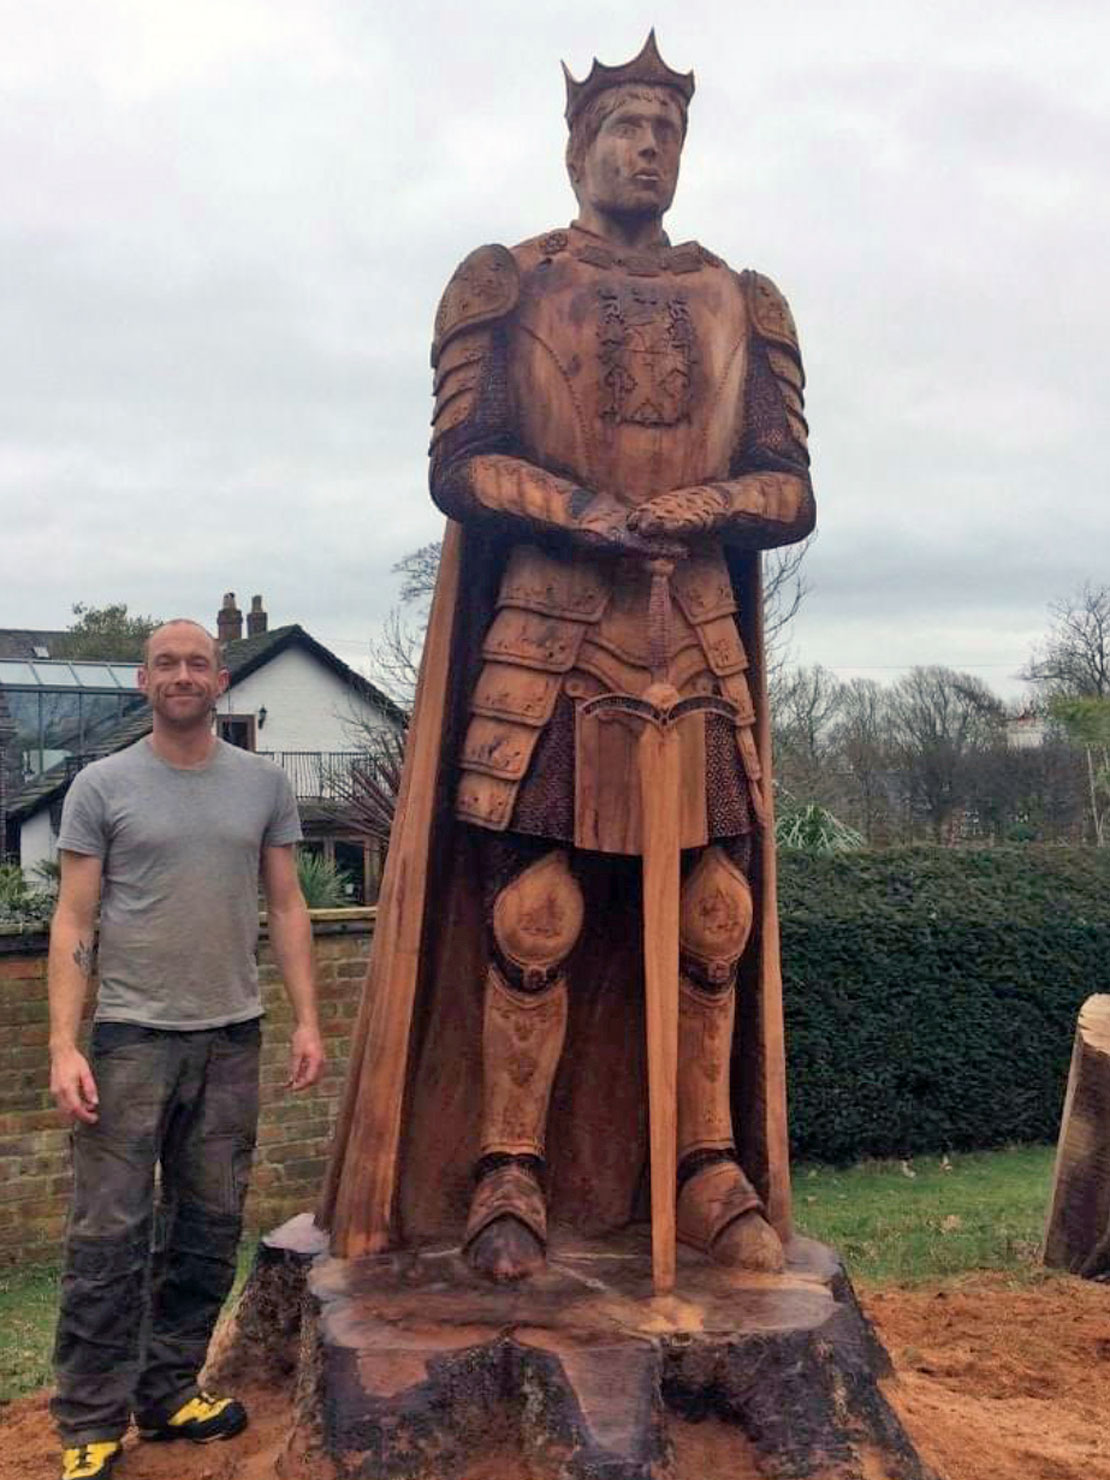 King Arthur wooden sculpture by Matthew Crabb